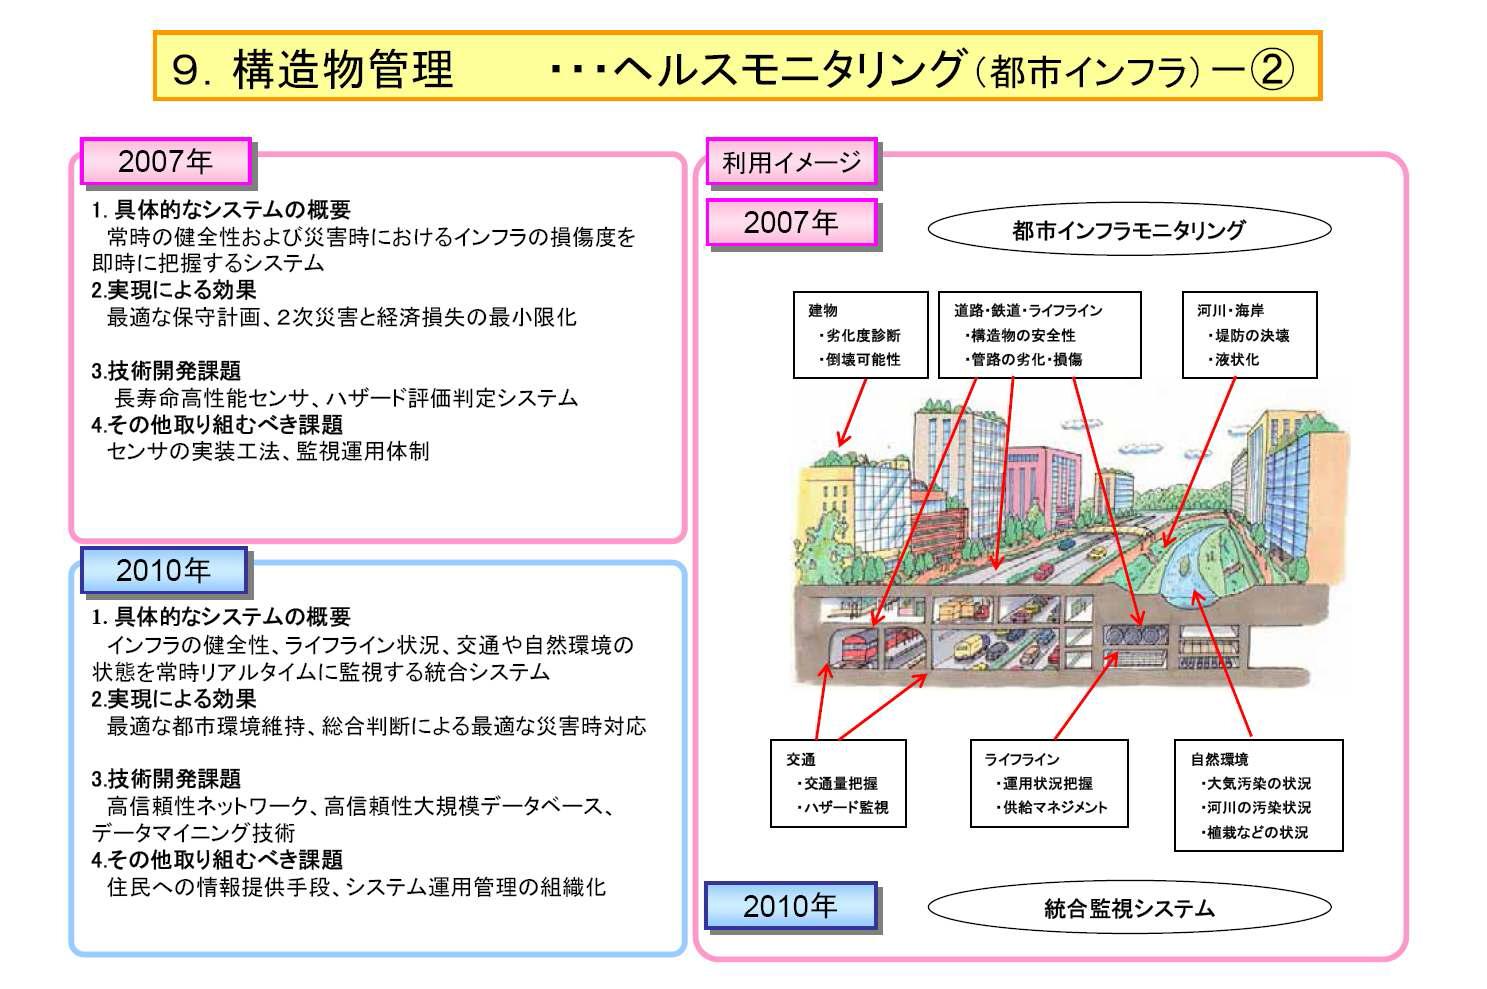 일본의 도시 인프라 재해 및 재난 방지 통합시스템 구축